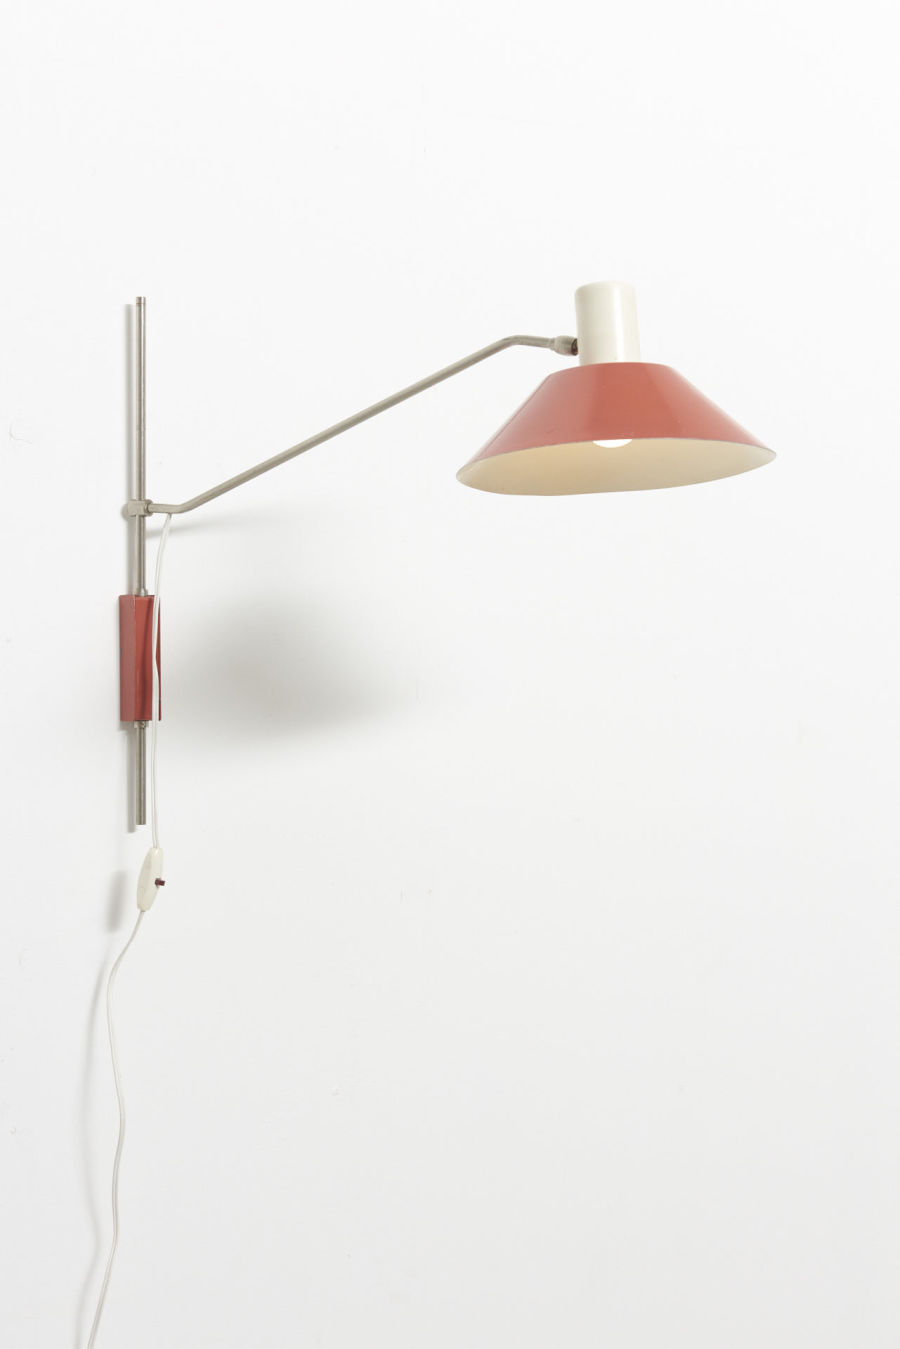 modestfurniture-vintage-2787-hoogervorst-wall-lamp-anvia07